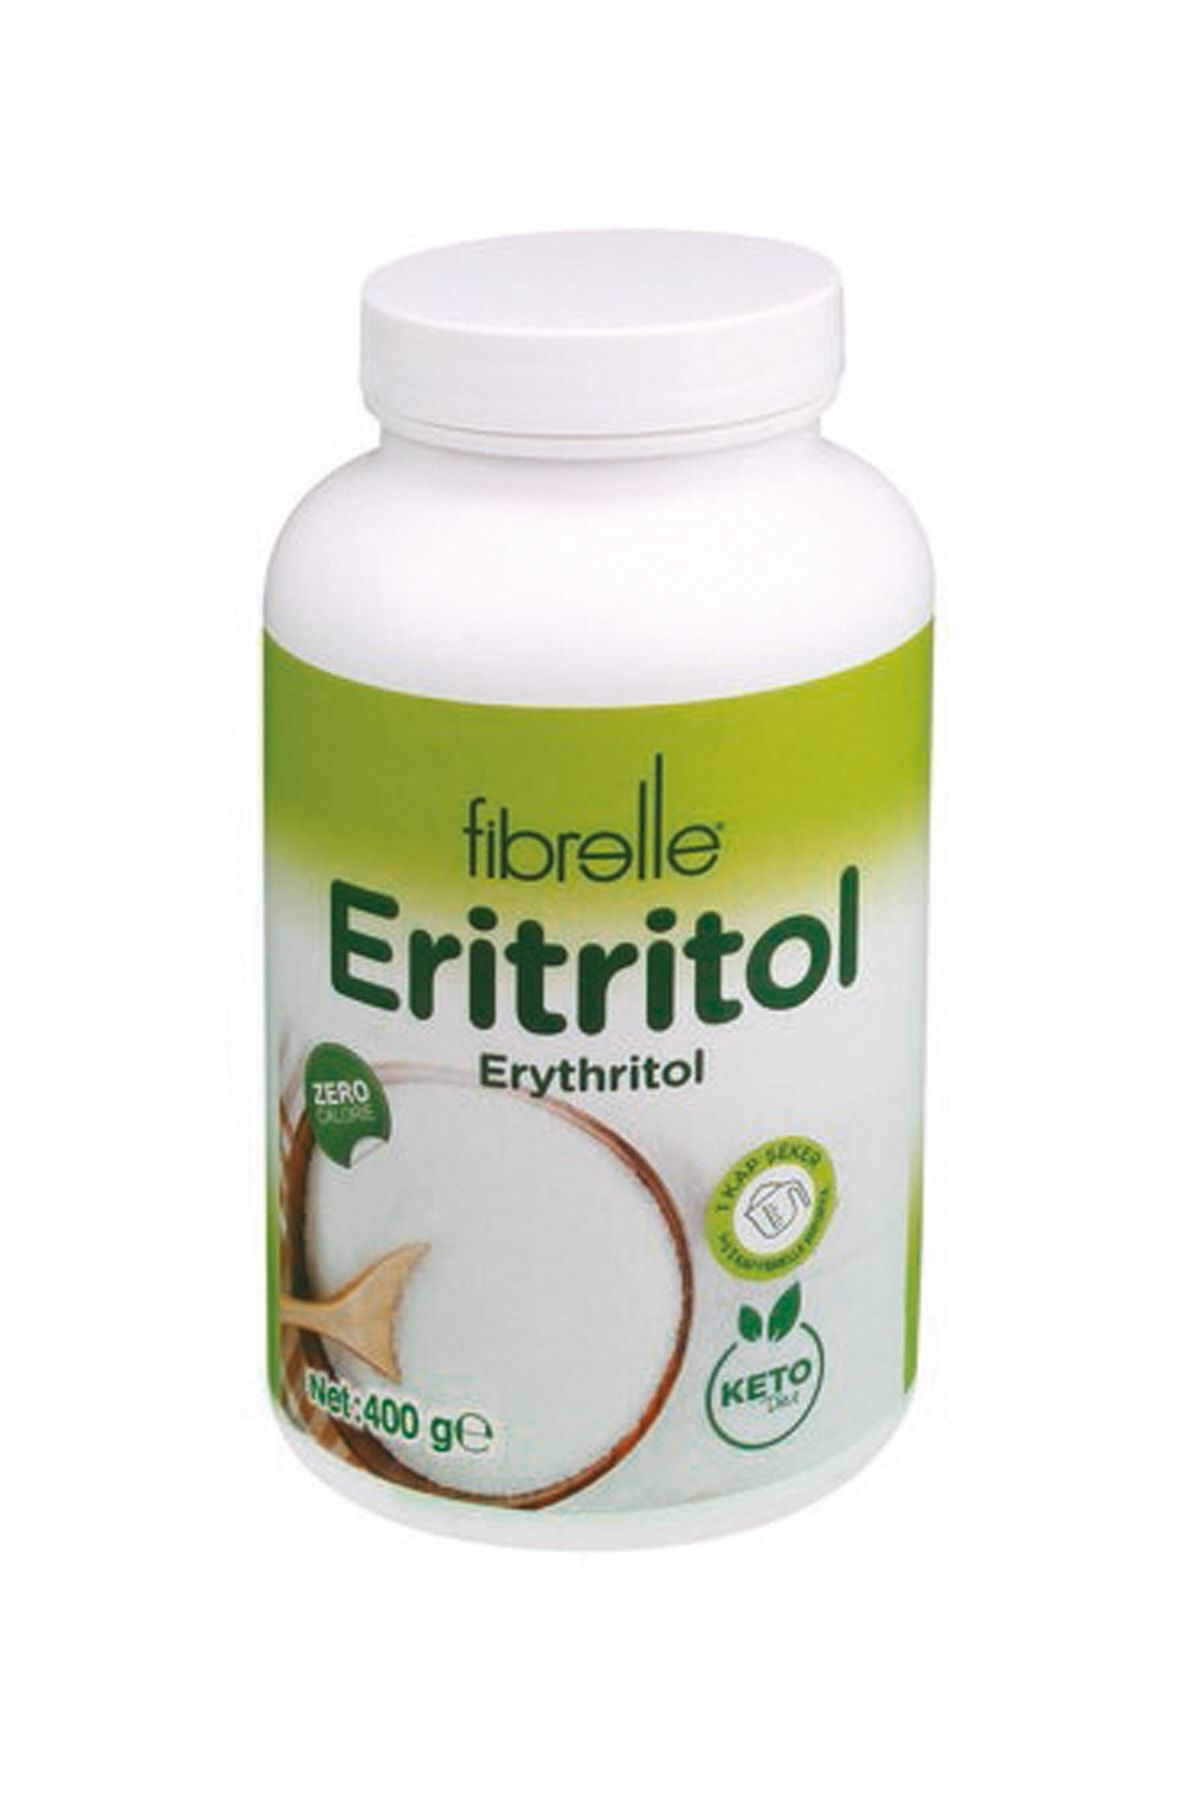 Fibrelle Eritritol ( 400 gr ) Sıfır Kalori Erythritol Toz Tatlandırıcı ( Ketojenik Diyete Uygundur )